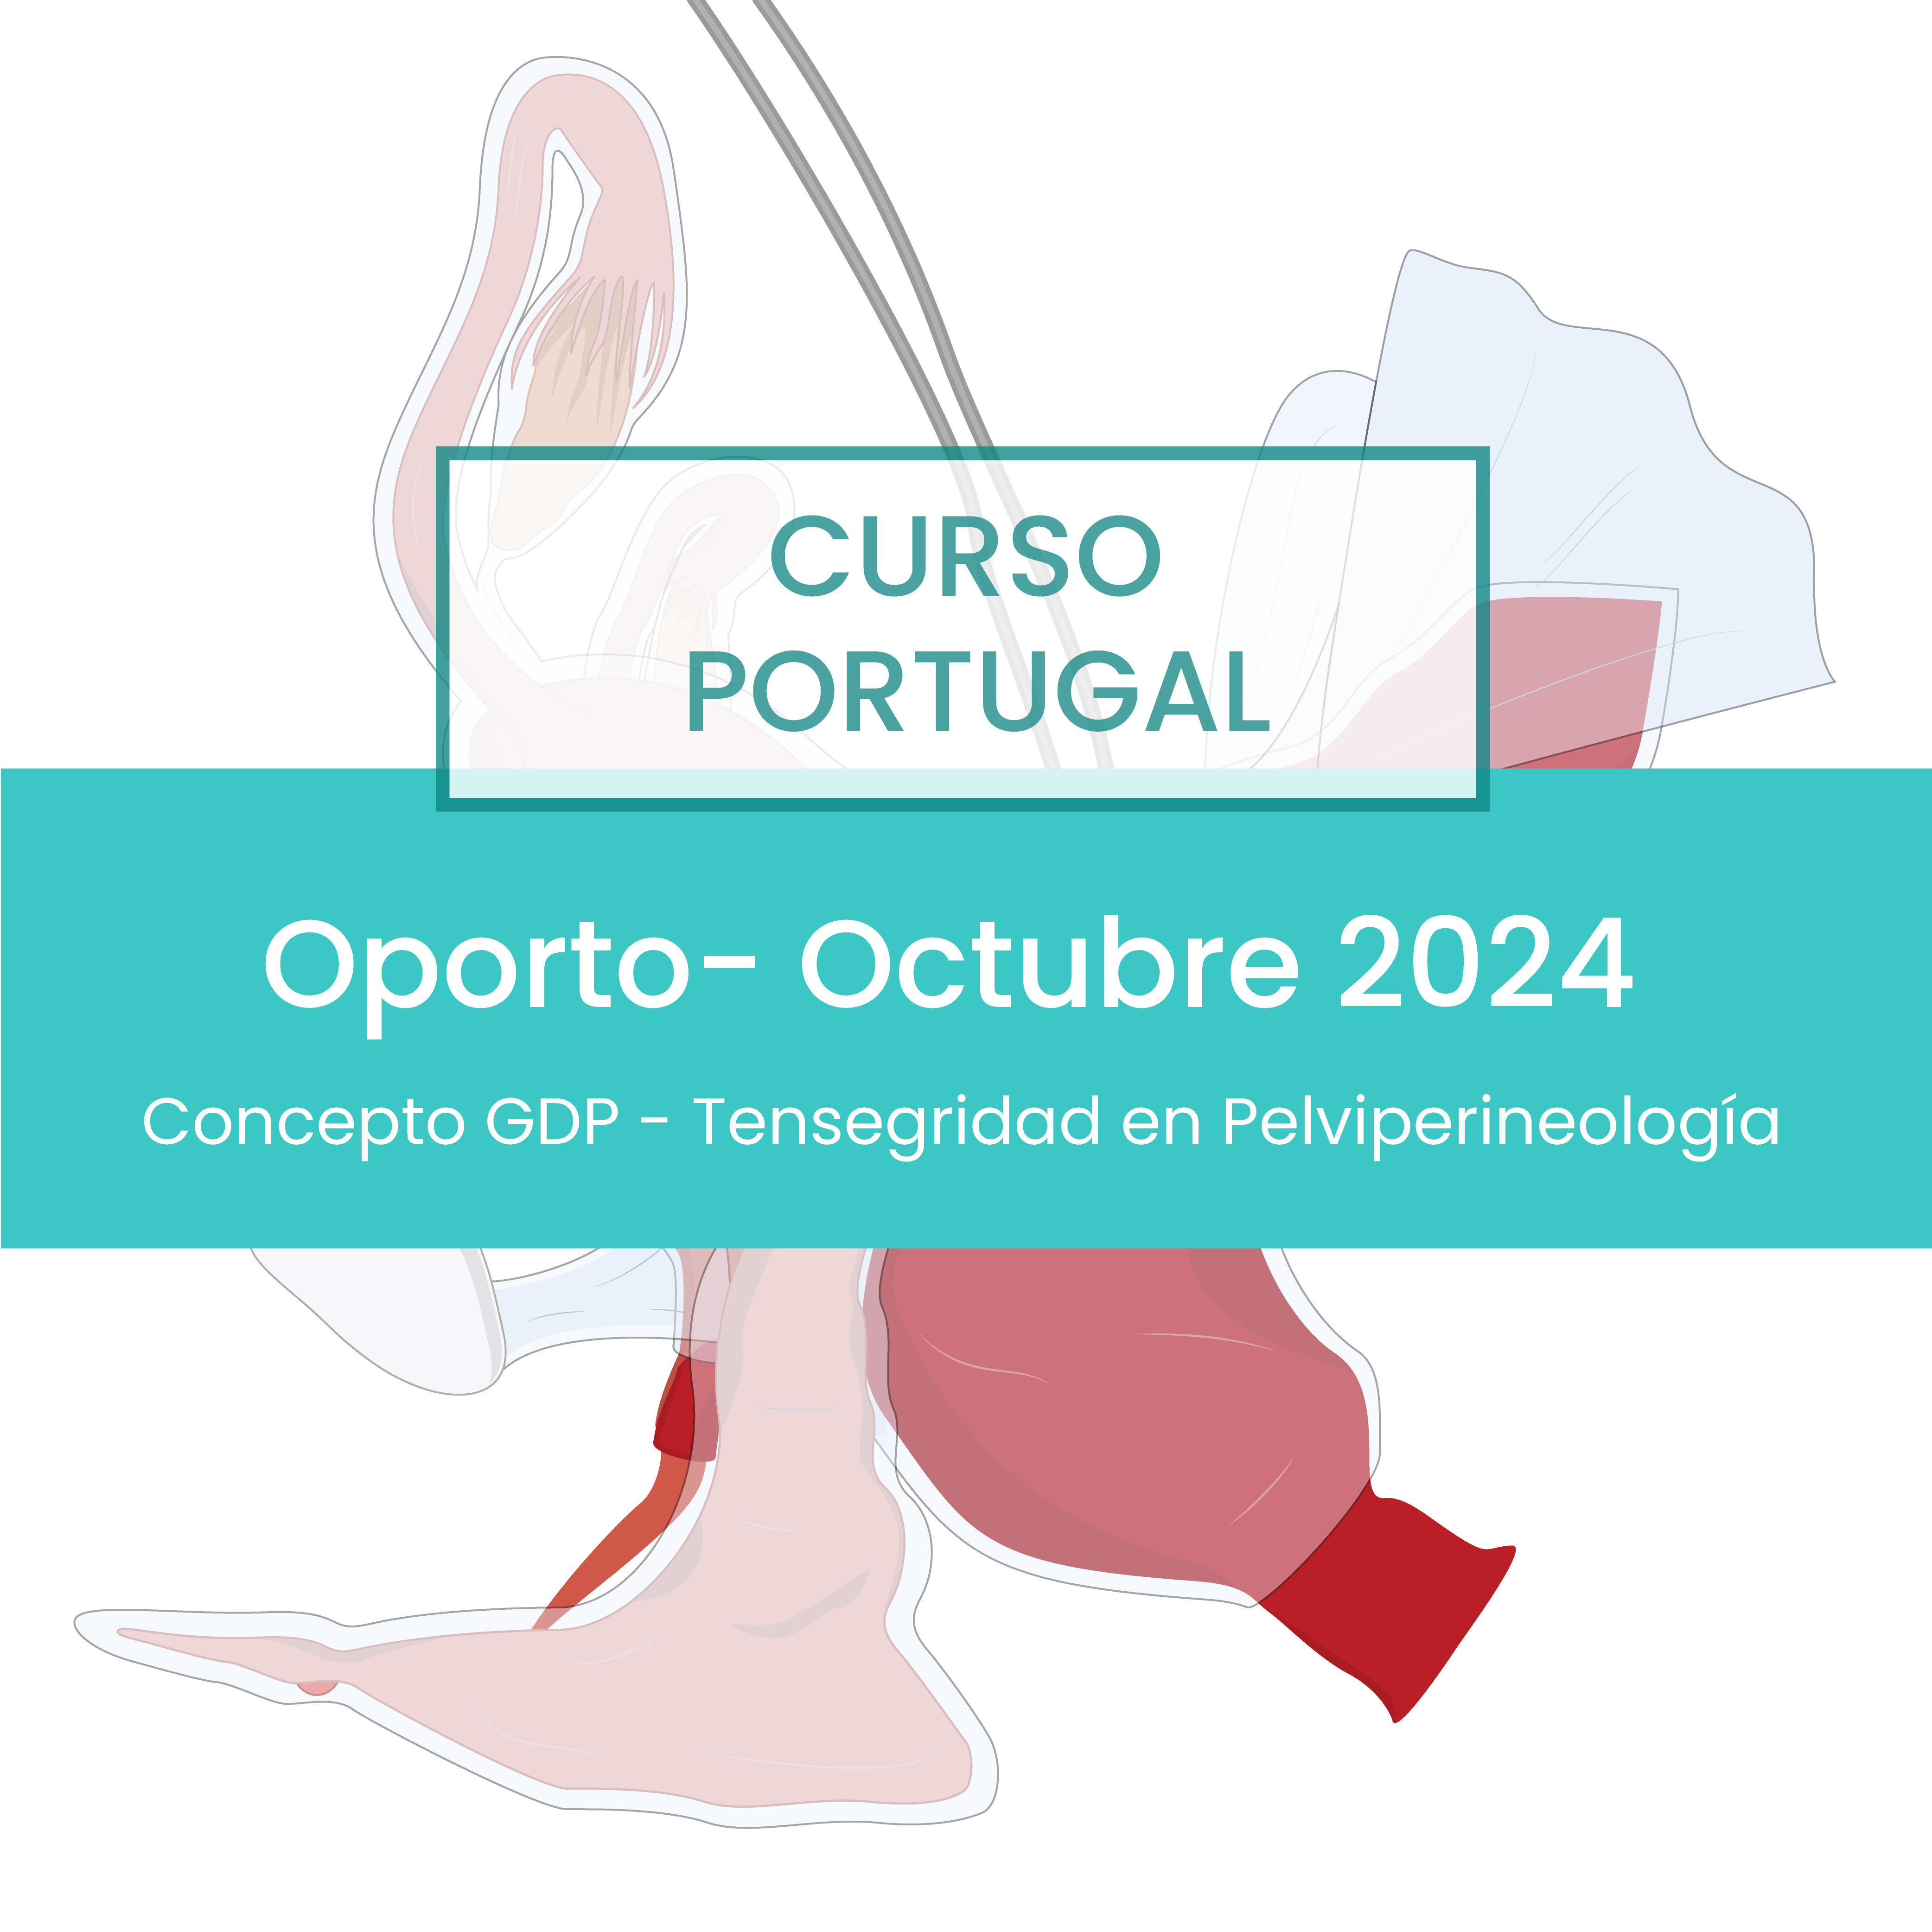 Curso Oporto: Tensegridad en Pelviperineología - Octubre 2024